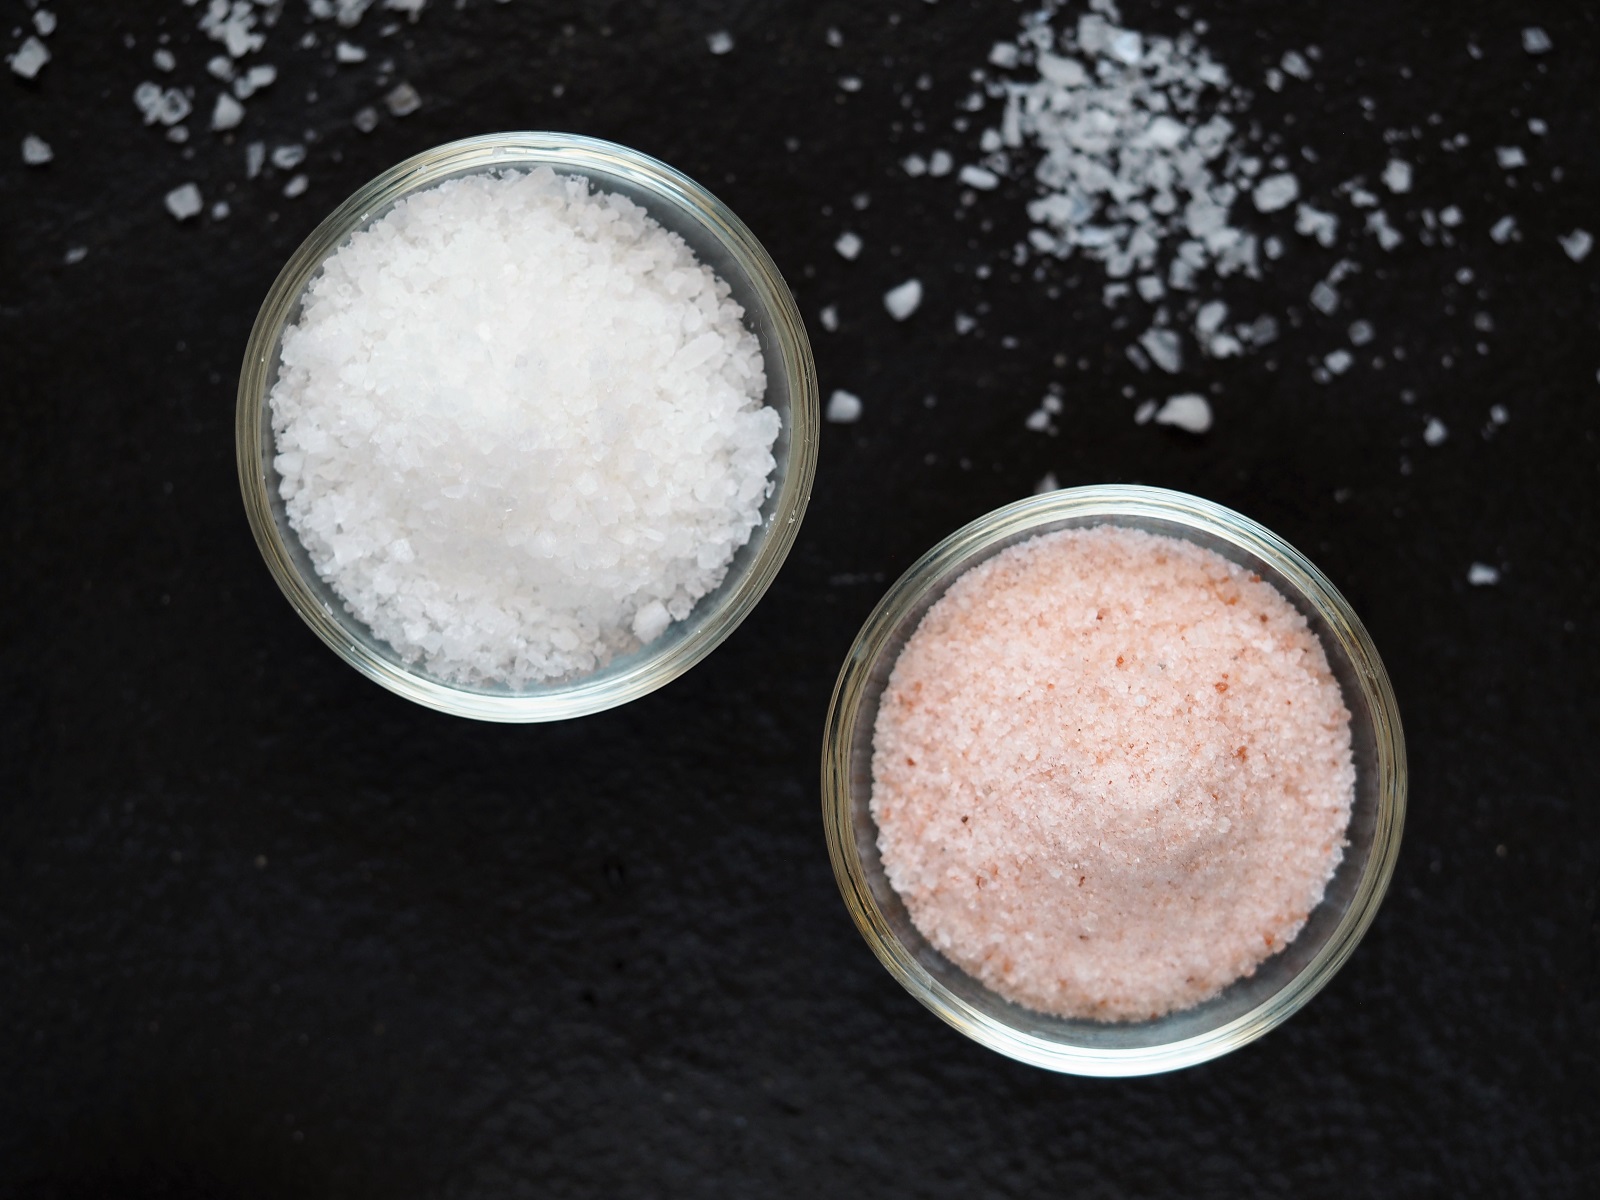 Odrobina soli to często zbawienny dodatek dla smaku i wartości soku warzywnego